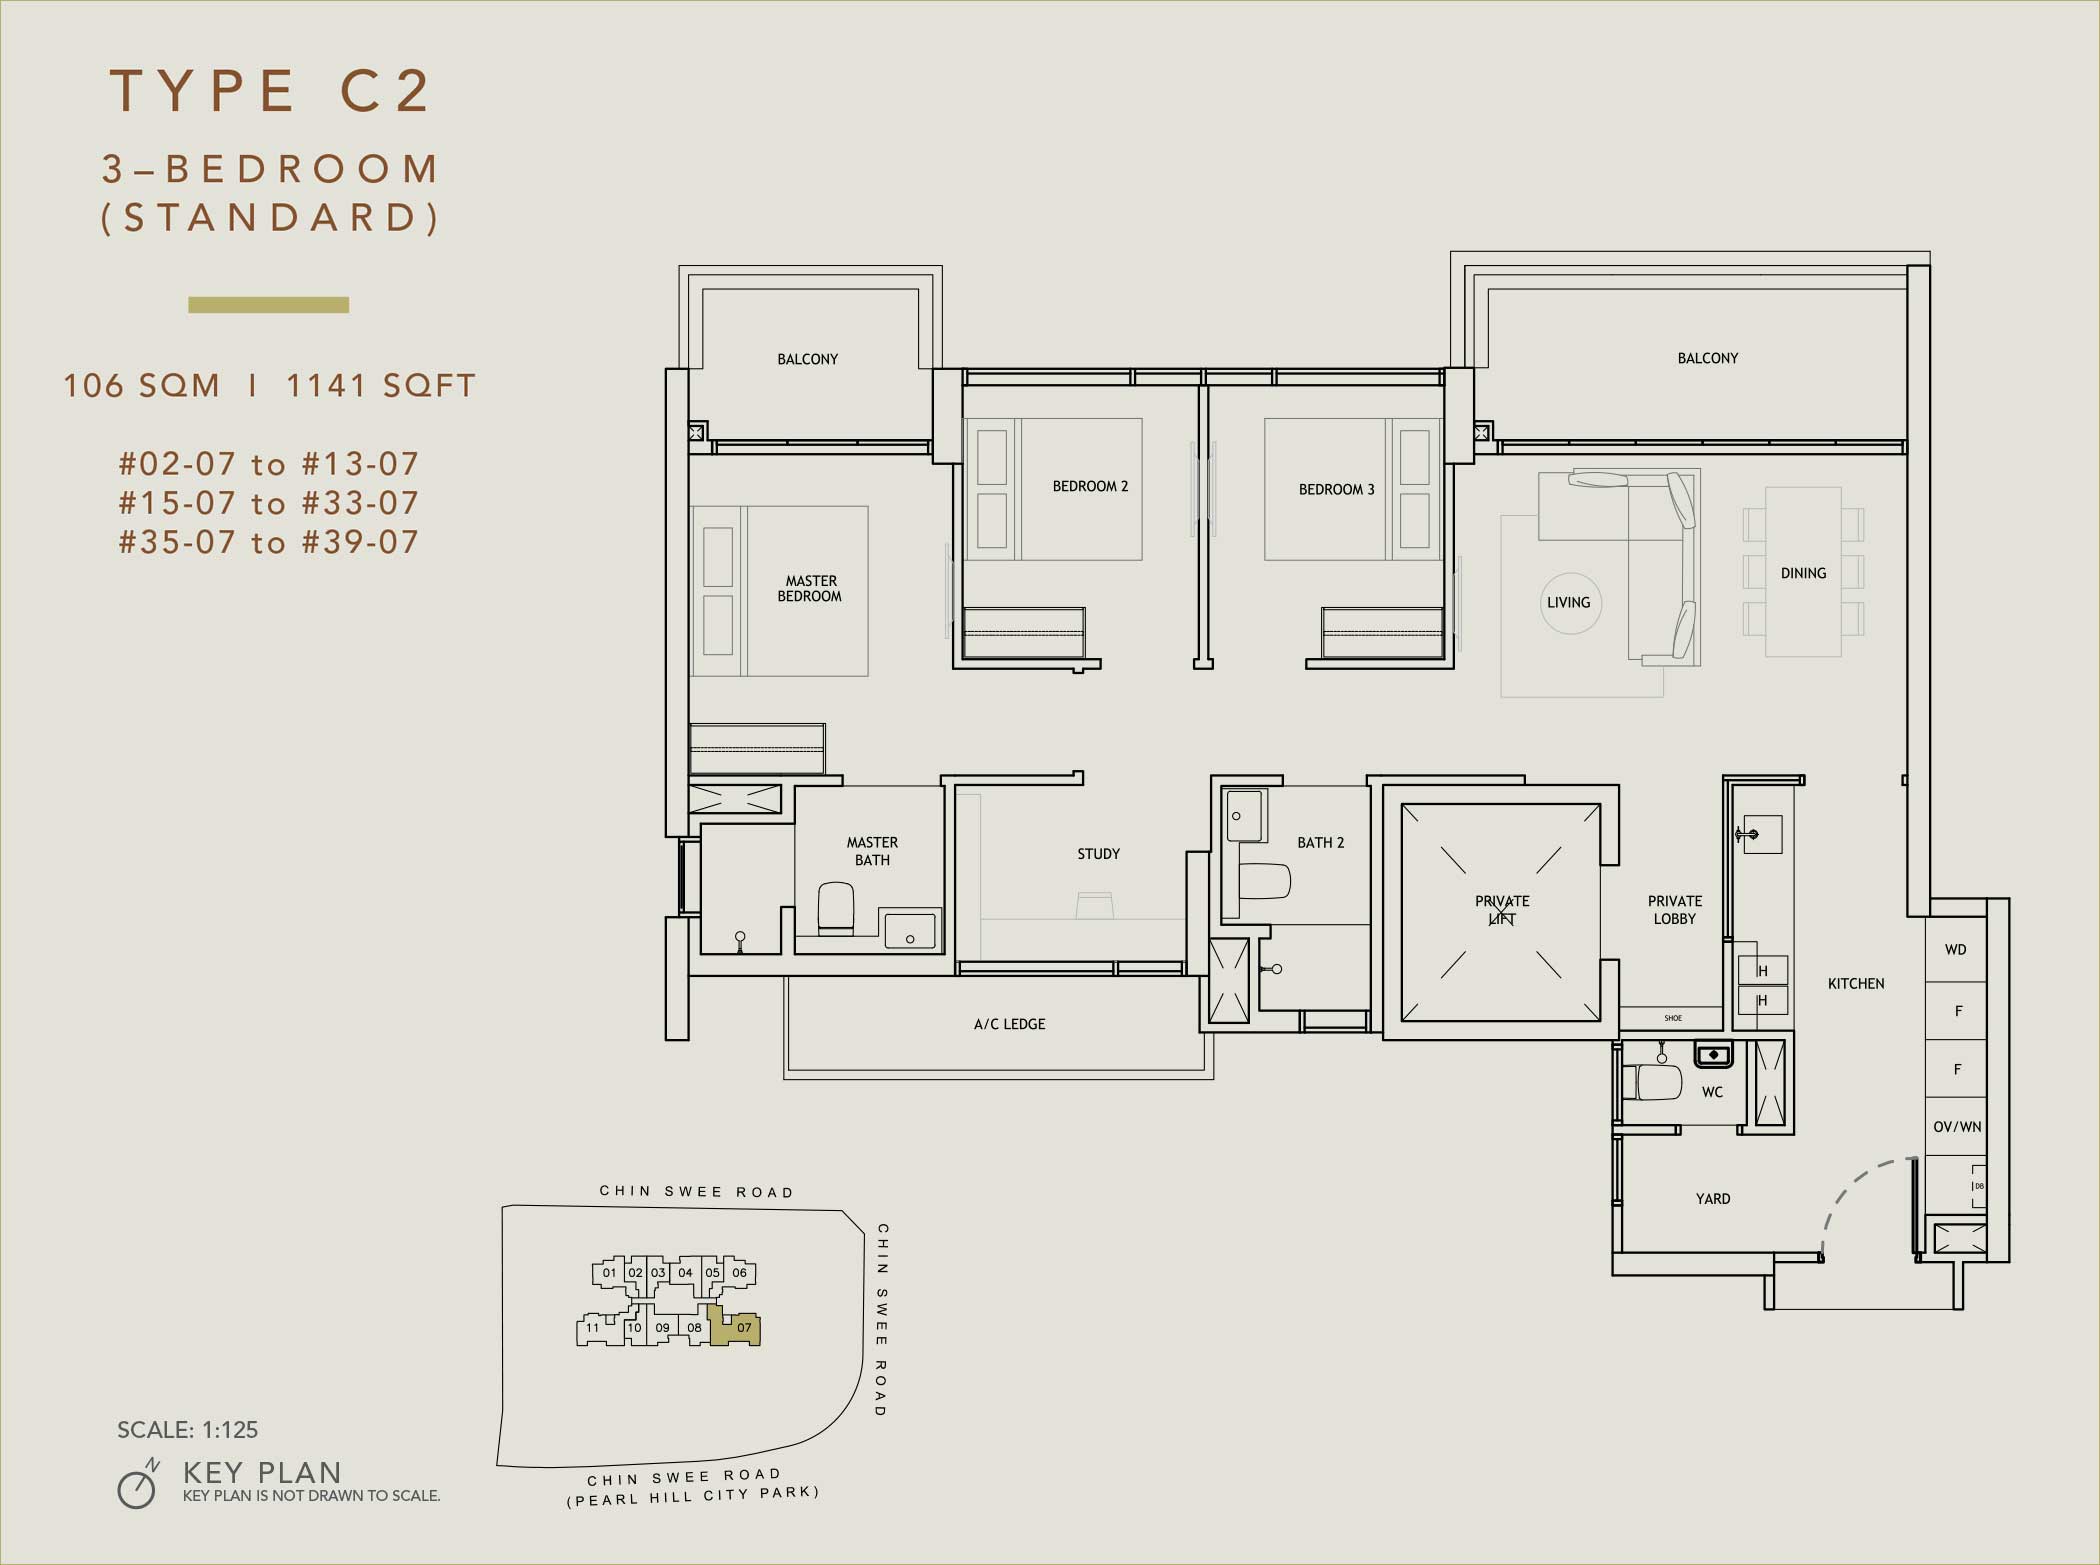 The Landmark 3-Bedroom Floor Plan (Type C2)